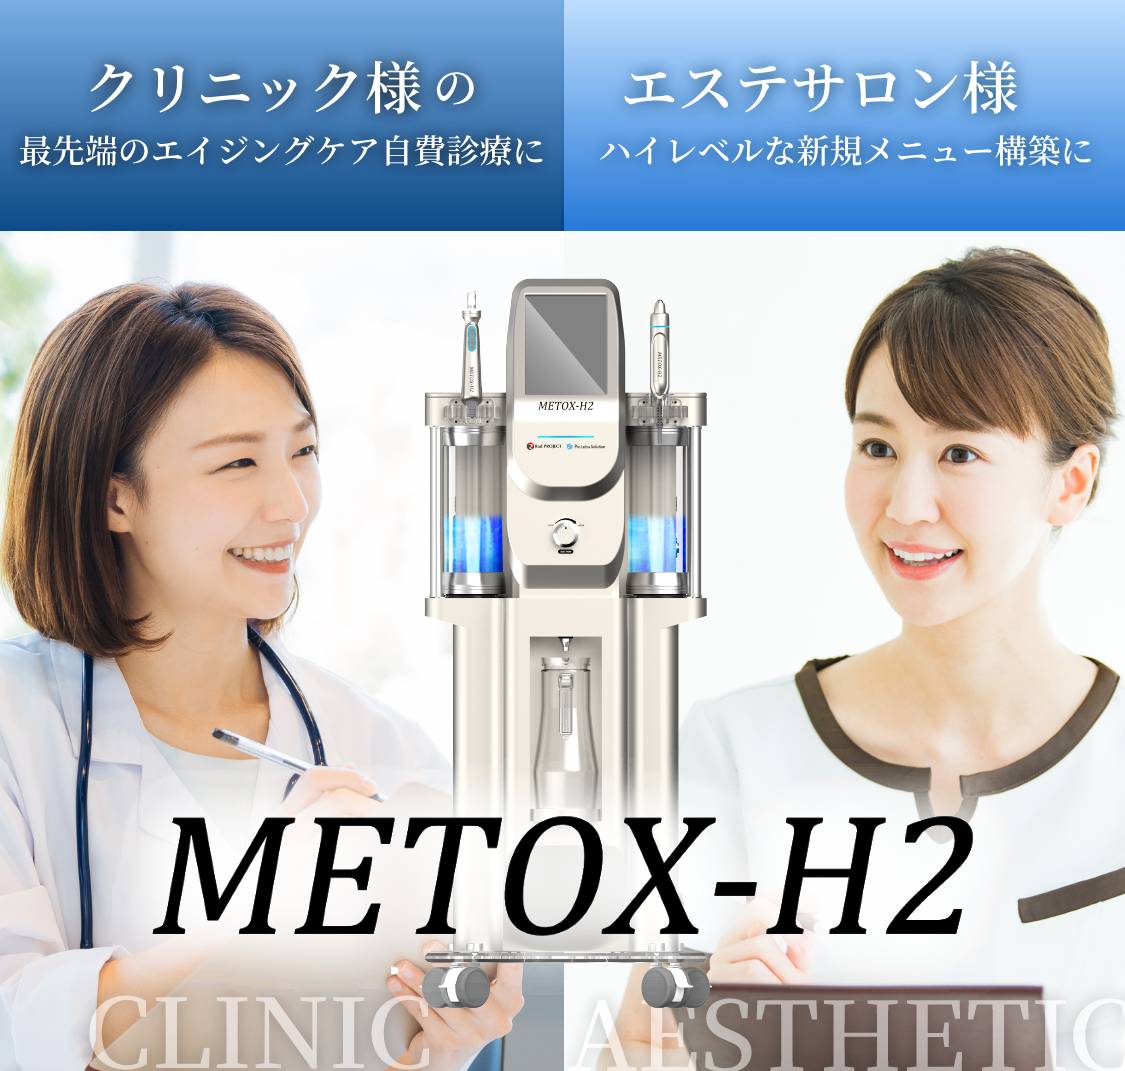 METOX-H2の写真